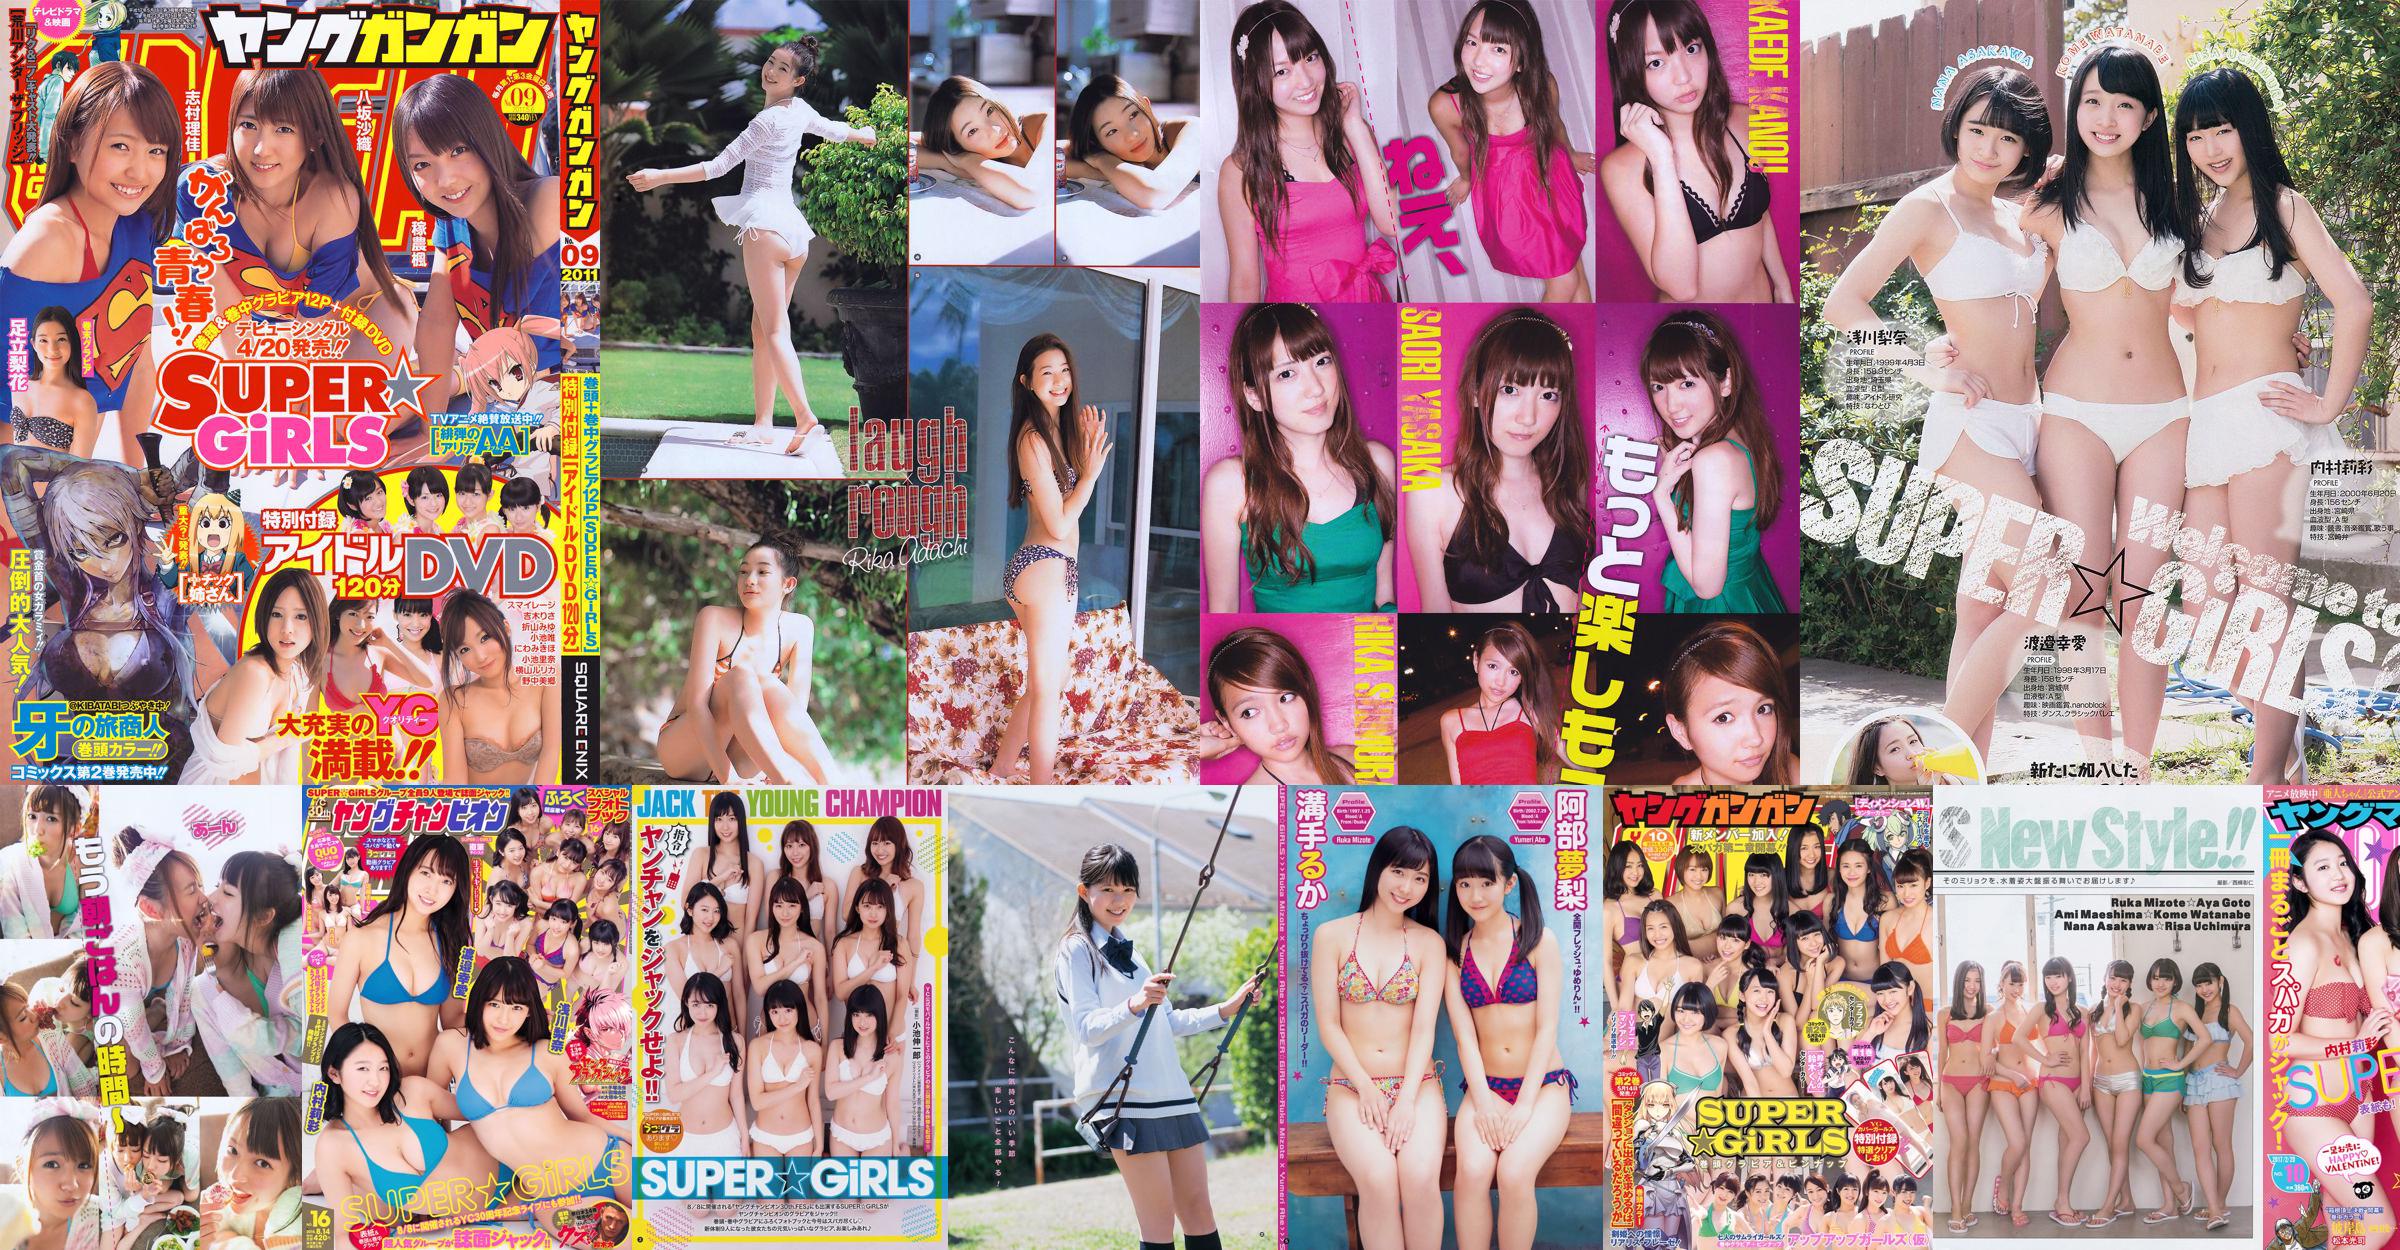 [Bomb.TV] Numéro de juillet 2011 SUPER ☆ GiRLS No.e81c1a Page 1